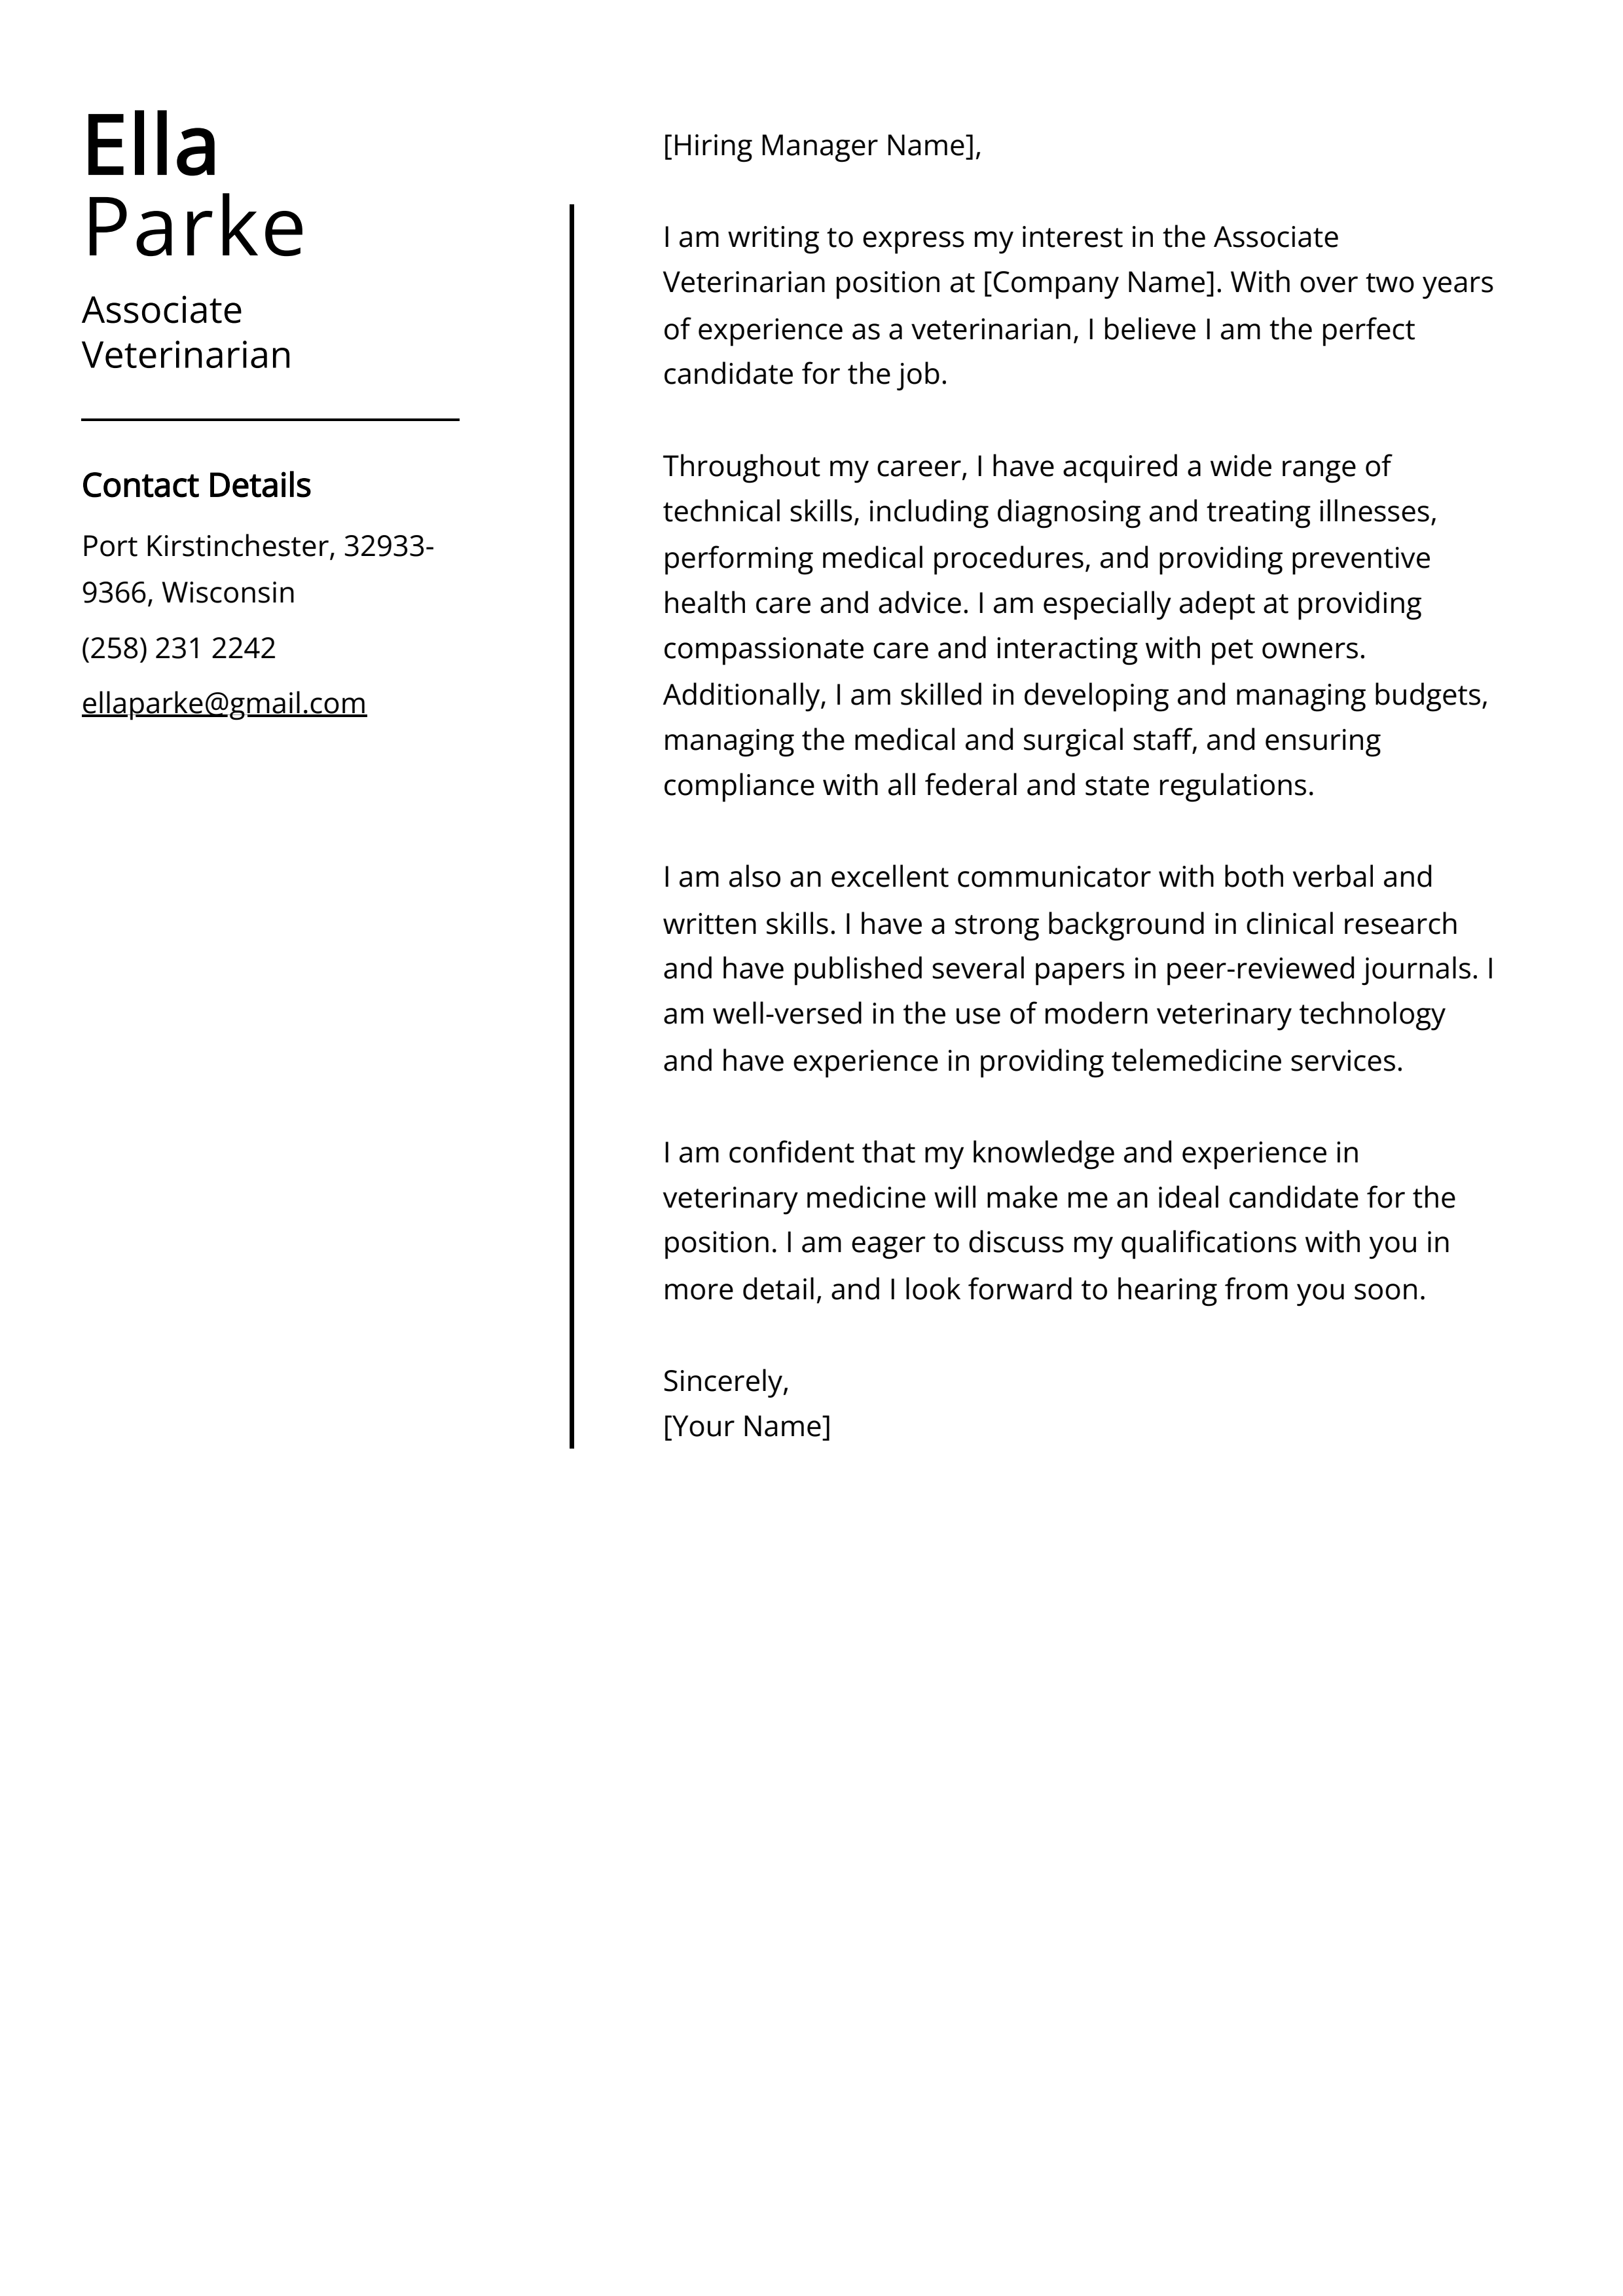 Associate Veterinarian Cover Letter Example